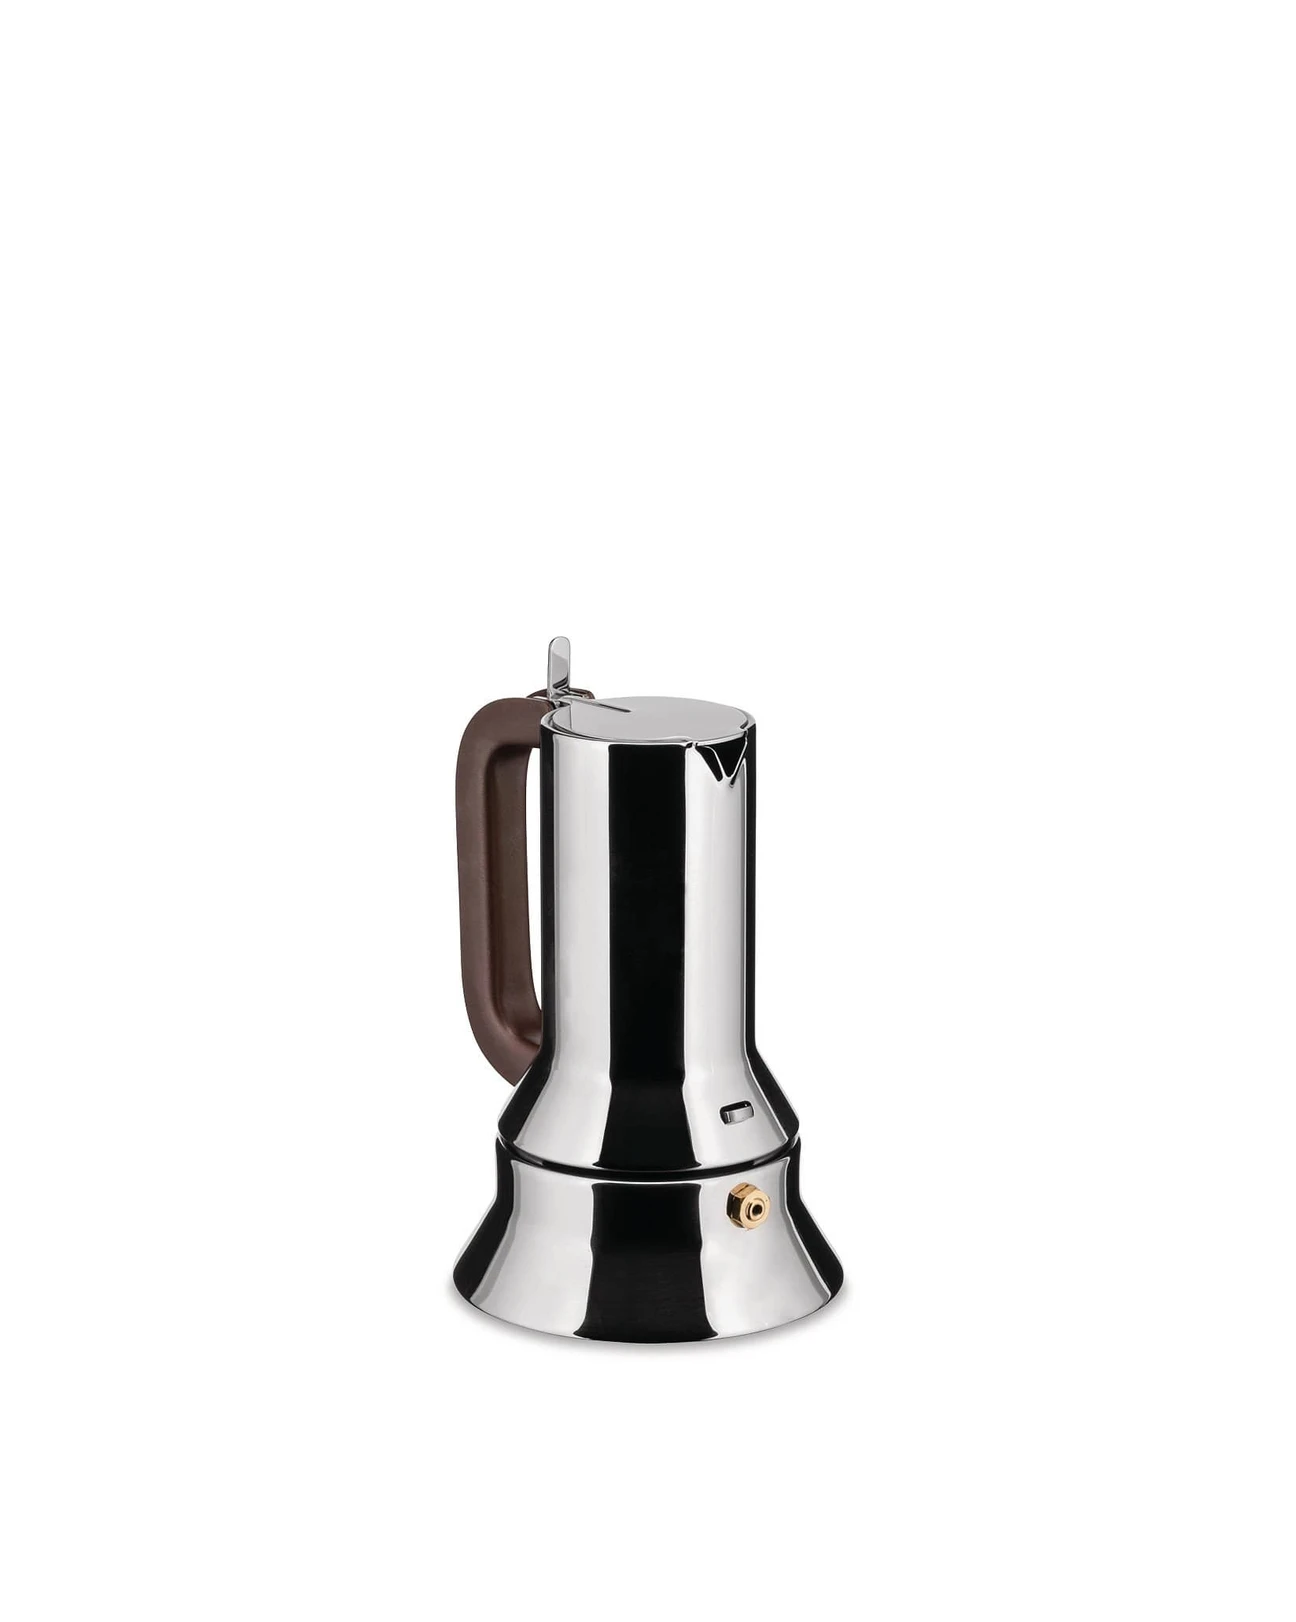 Alessi Espresso coffee maker 9090, 1 cup